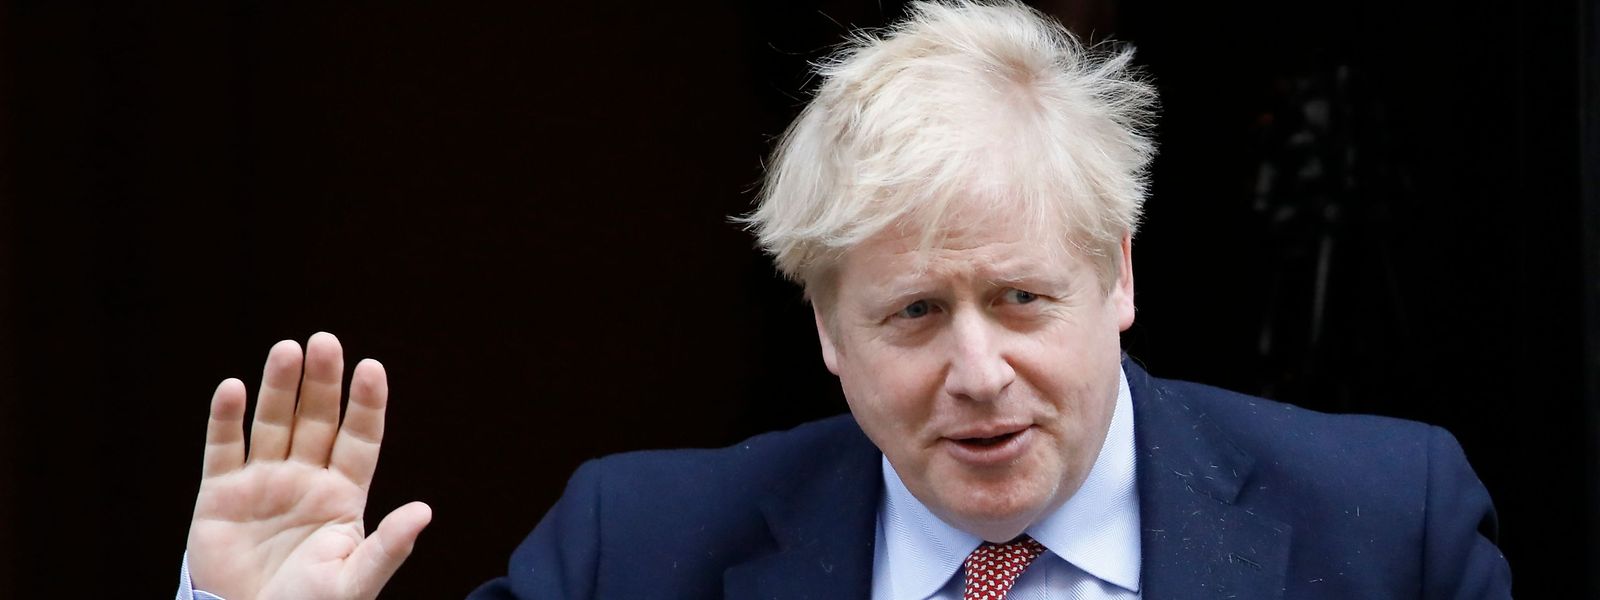 Der britische Premierminister wurde auf die Intensivstation verlegt, wie die Downing Street am Montagabend bestätigte.